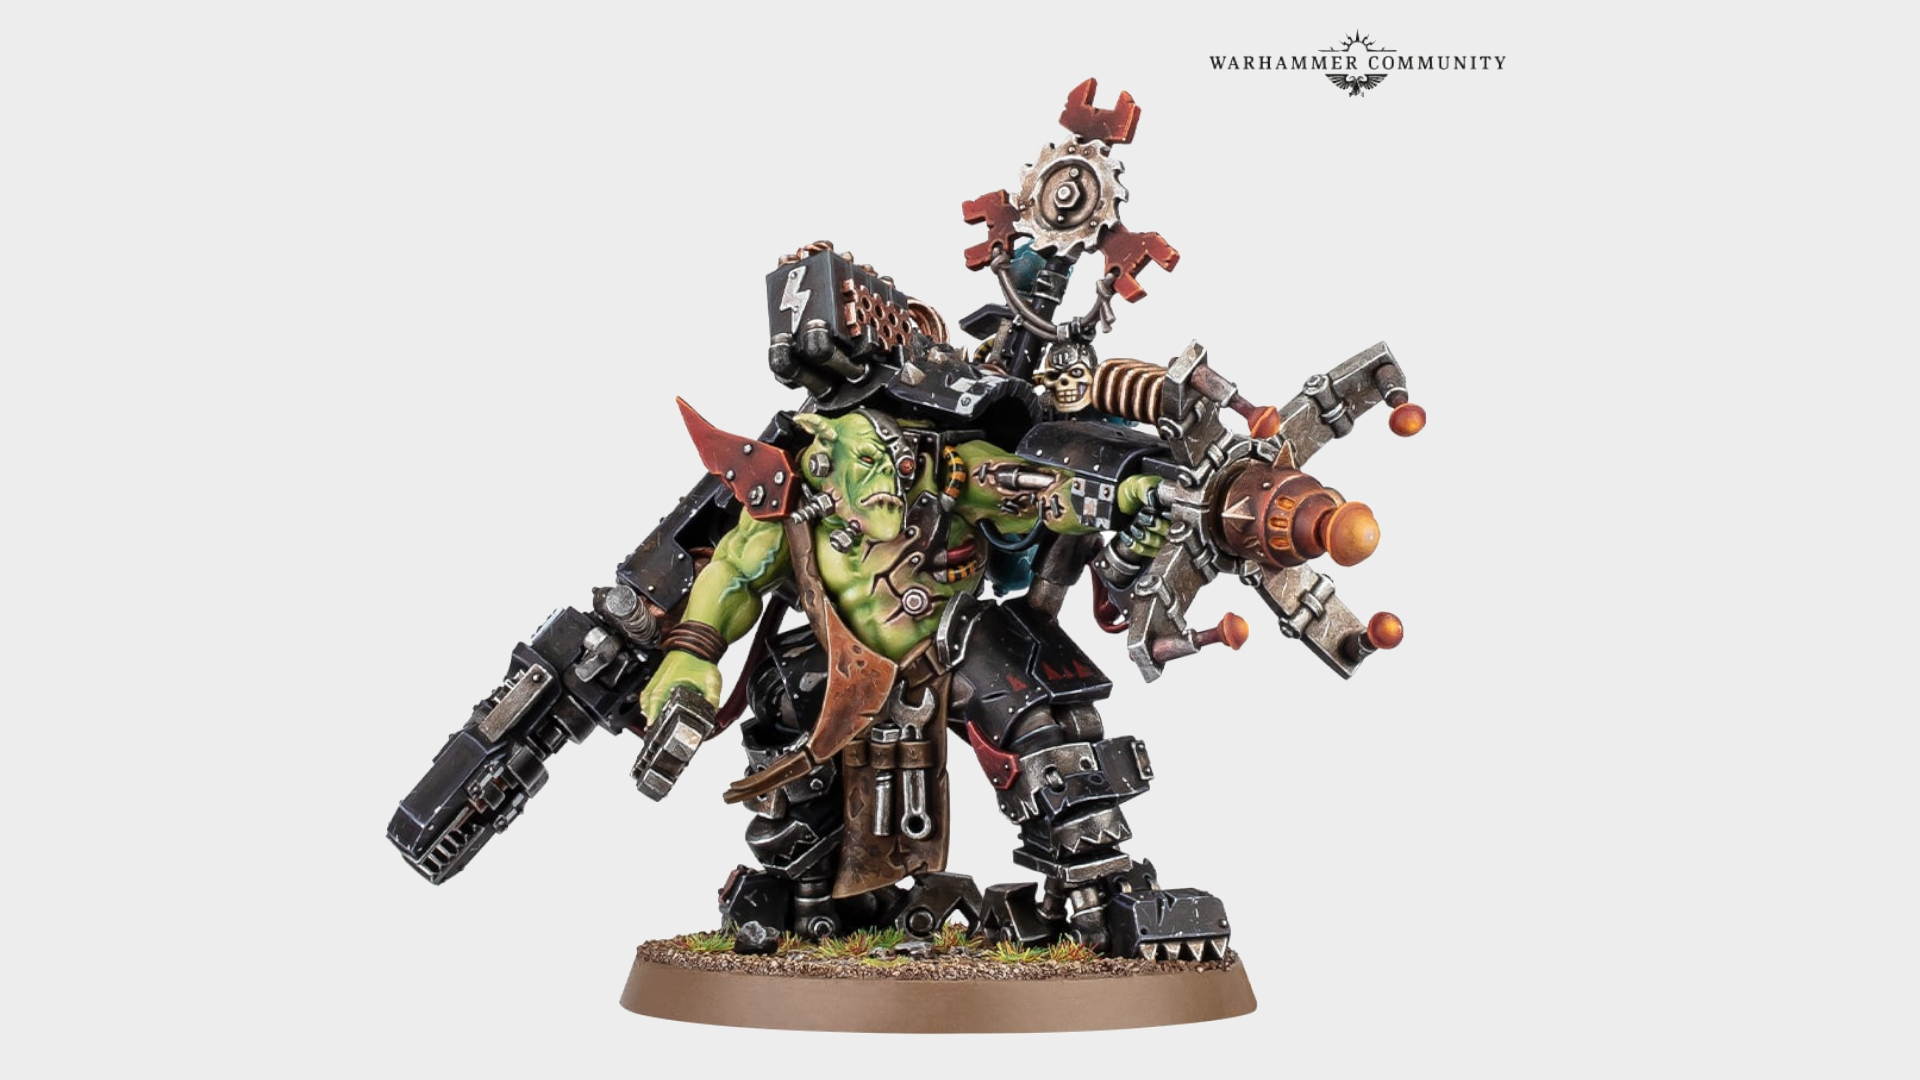 Ein Ork-Modell steht mit erhobener Waffe auf einem schlichten Hintergrund